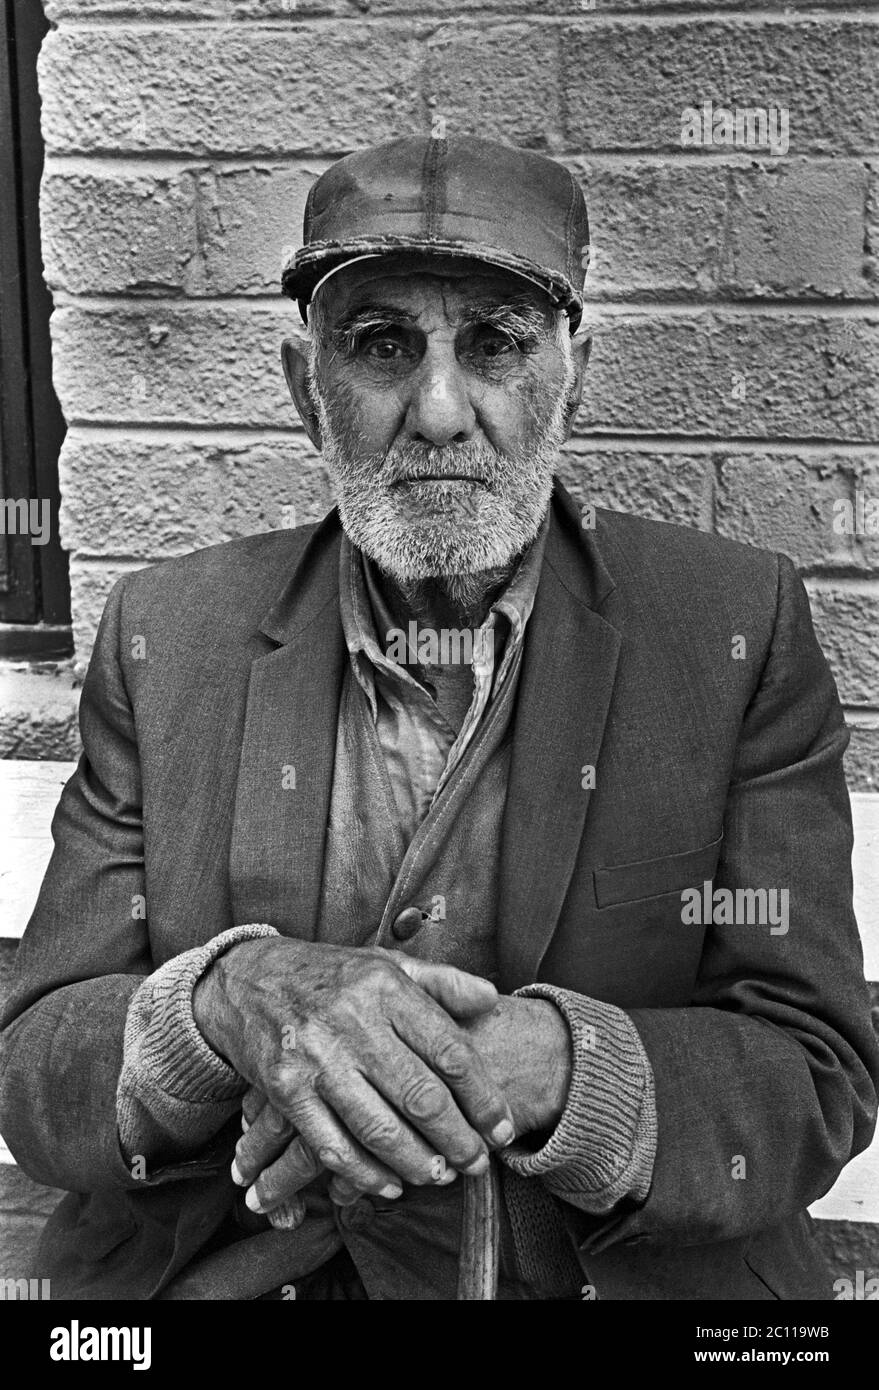 Porträt eines älteren hispanischen Mannes mit Bart auf einer Bank mit einem Stock sitzend, in Santa Fe, New Mexico, um 1973. Stockfoto